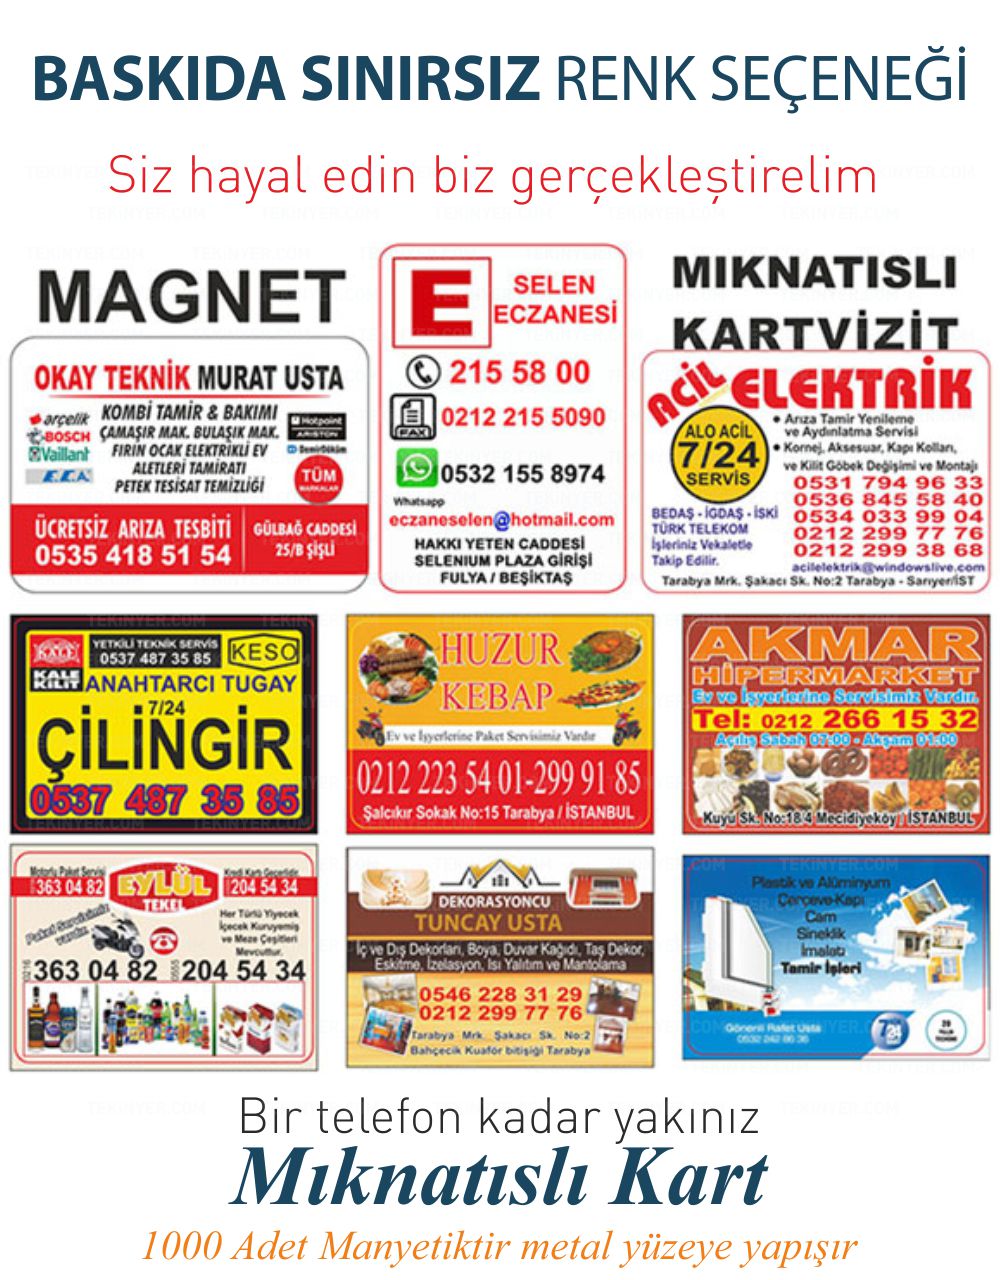 Beşiktaş Mıknatıslı Kartvizit Sınırsız Renk Baskı Seçeneği